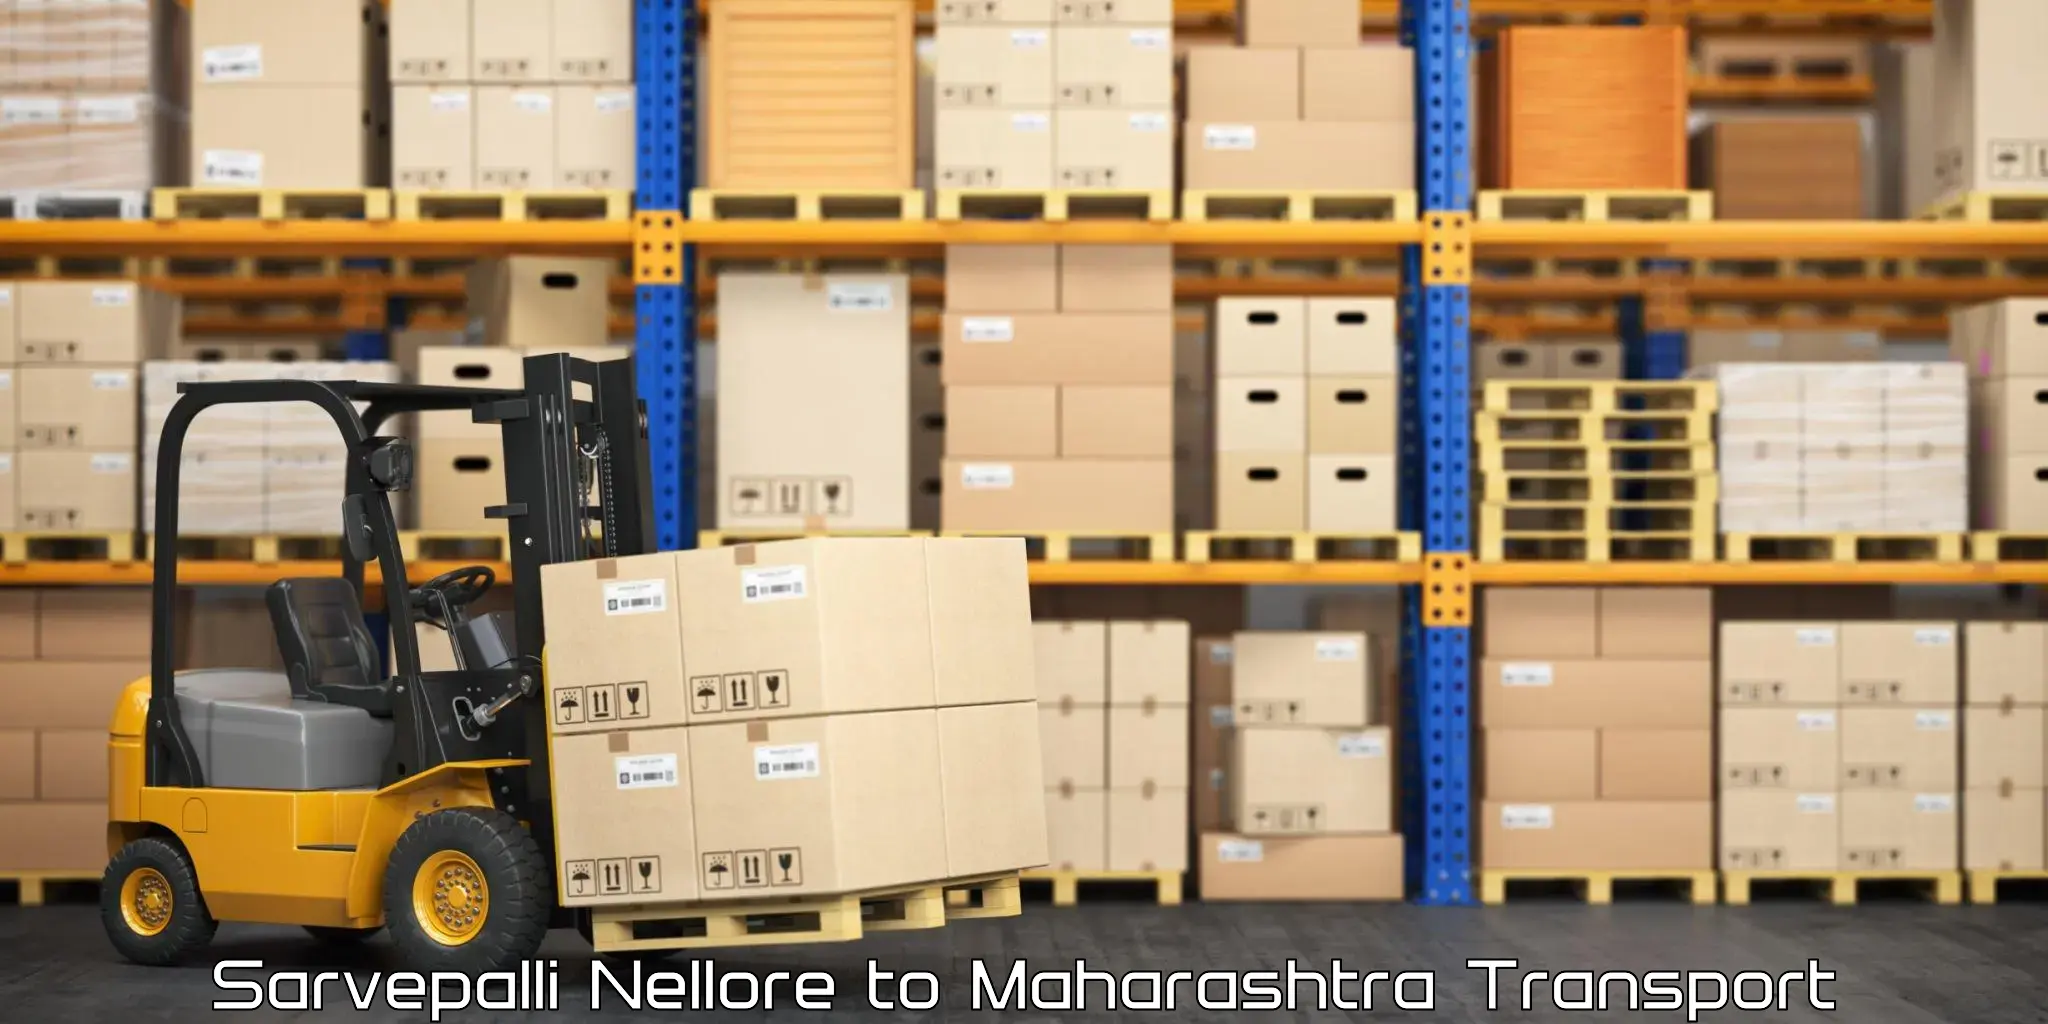 Shipping partner Sarvepalli Nellore to Nagpur